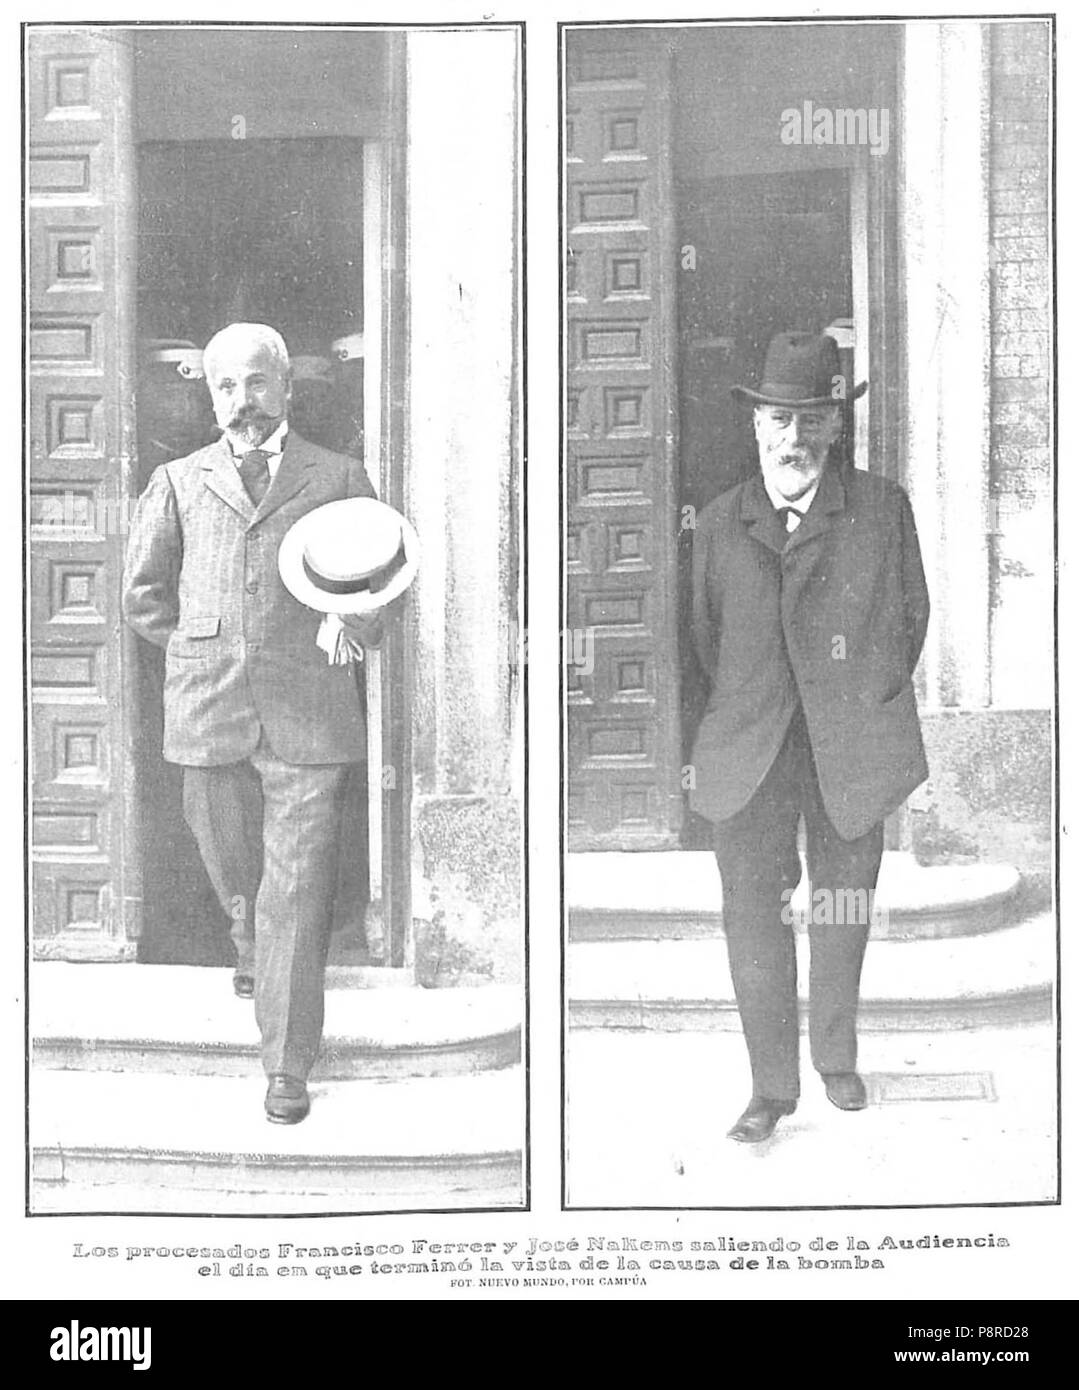 405 Los procesados Francisco Ferrer y José Nakens saliendo de la Audiencia el día en que terminó la vista de la causa de la bomba, Nuevo Mundo, 27-06-1907 Stock Photo